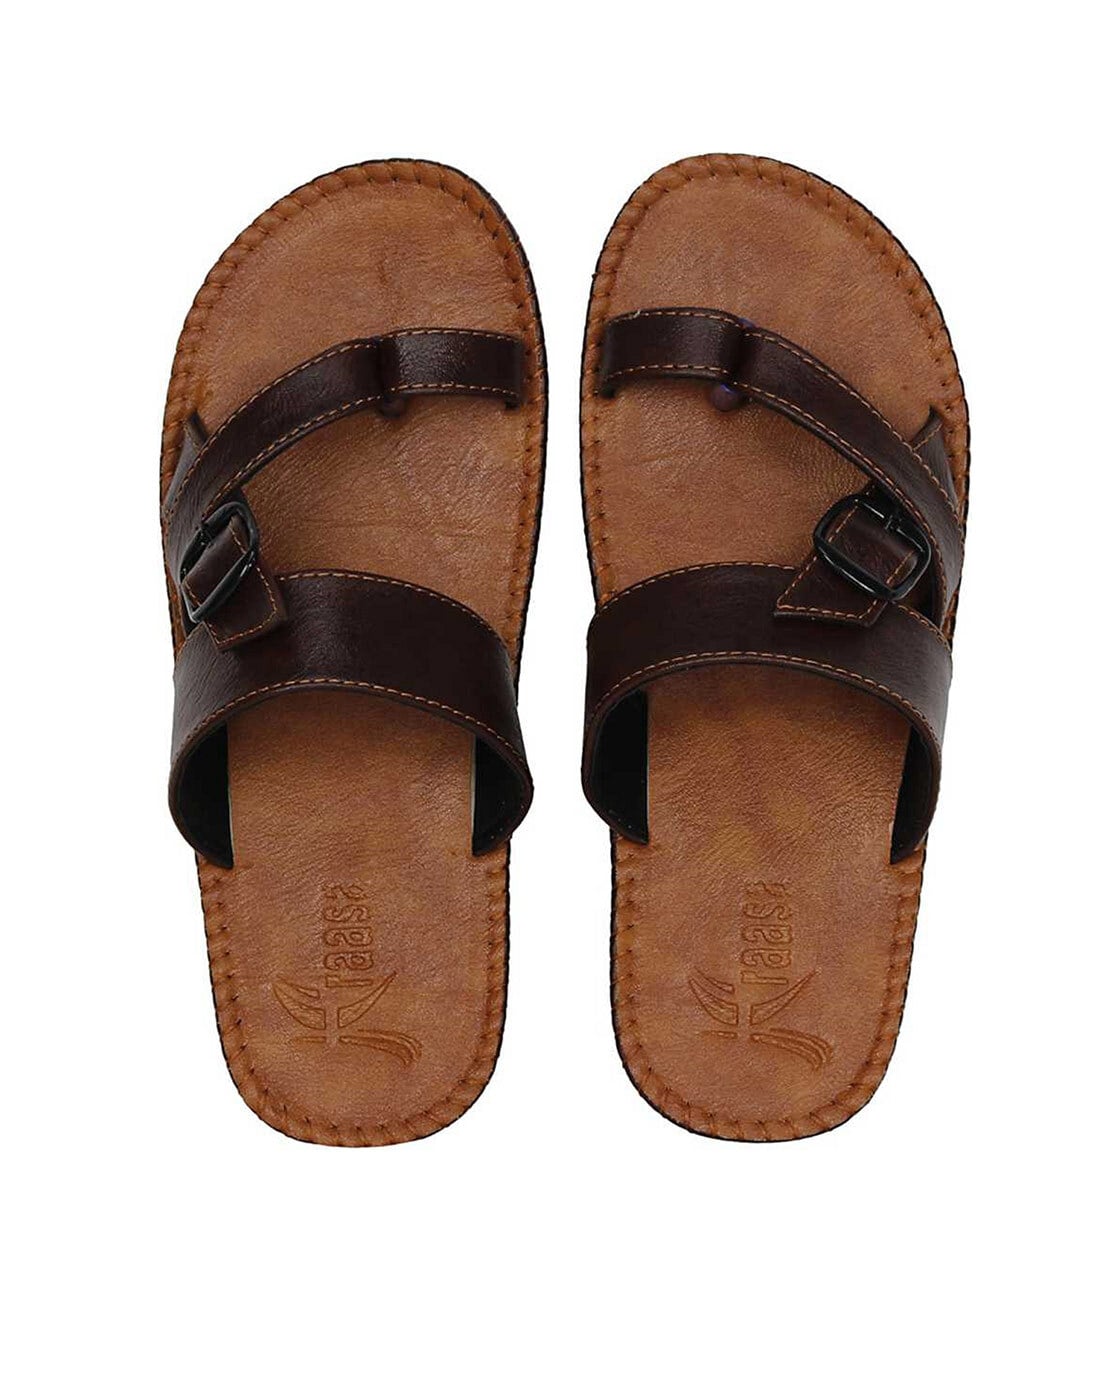 Buy Sandals online | Looksgud.in